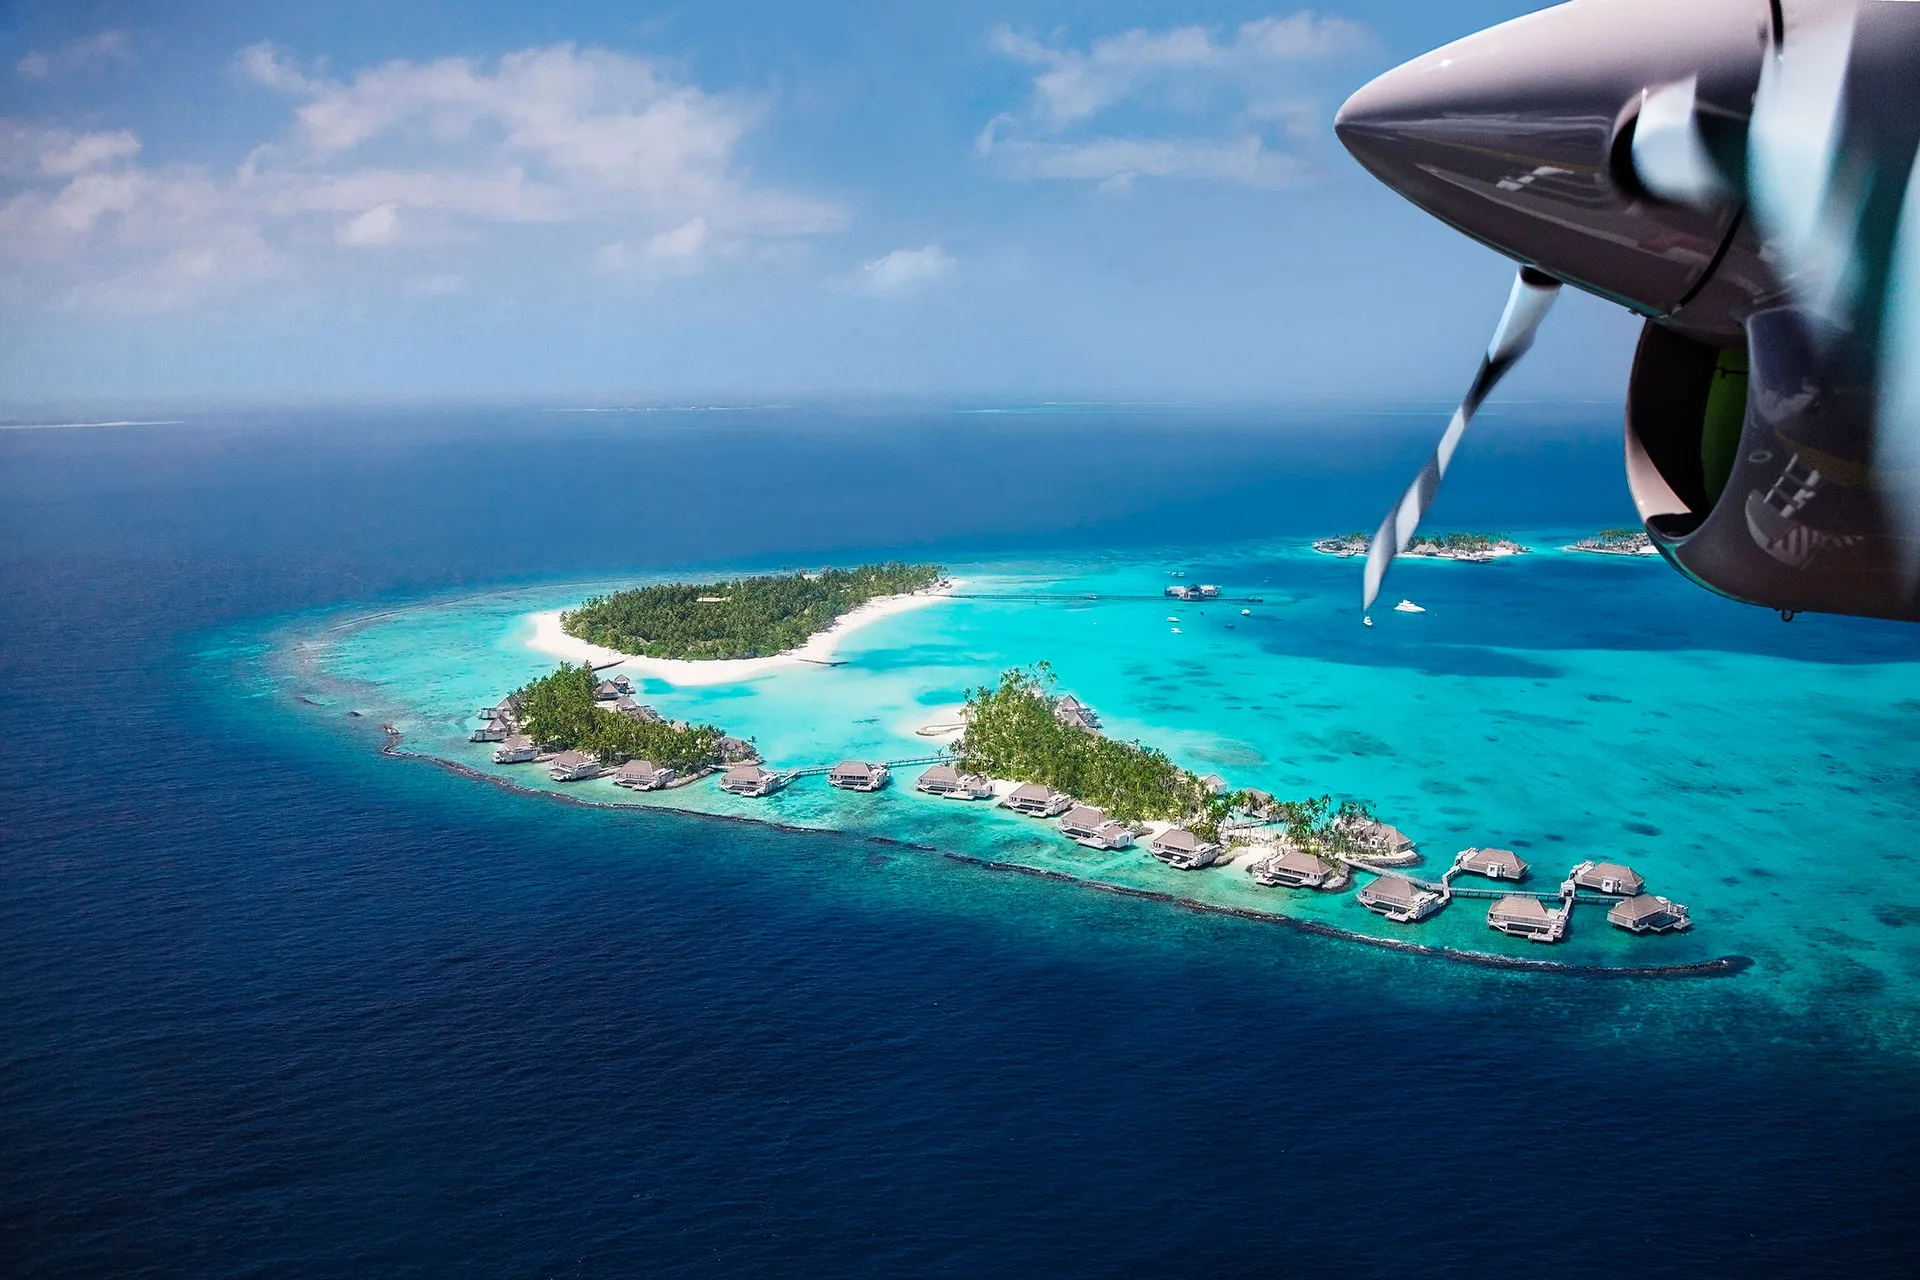 Maledivische Insel vom Wasserflugzeug aus